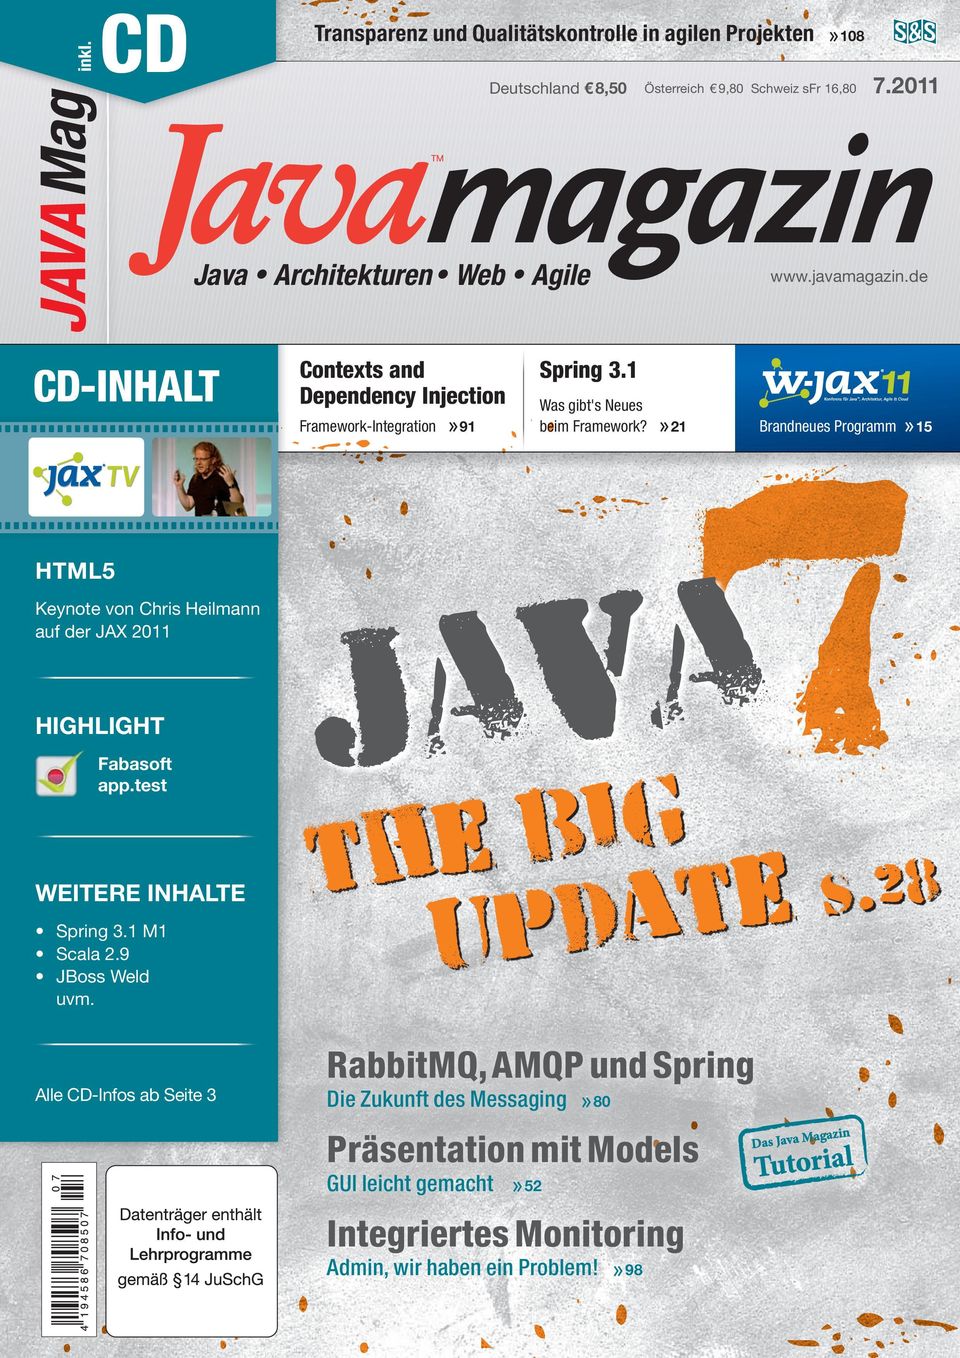 Alle CD-Infos ab Seite 3 7.2011 magazin Java Architekturen Web Agile CD-INHALT» 108» 91 www.javamagazin.de Spring 3.1 Was gibt's Neues beim Framework?